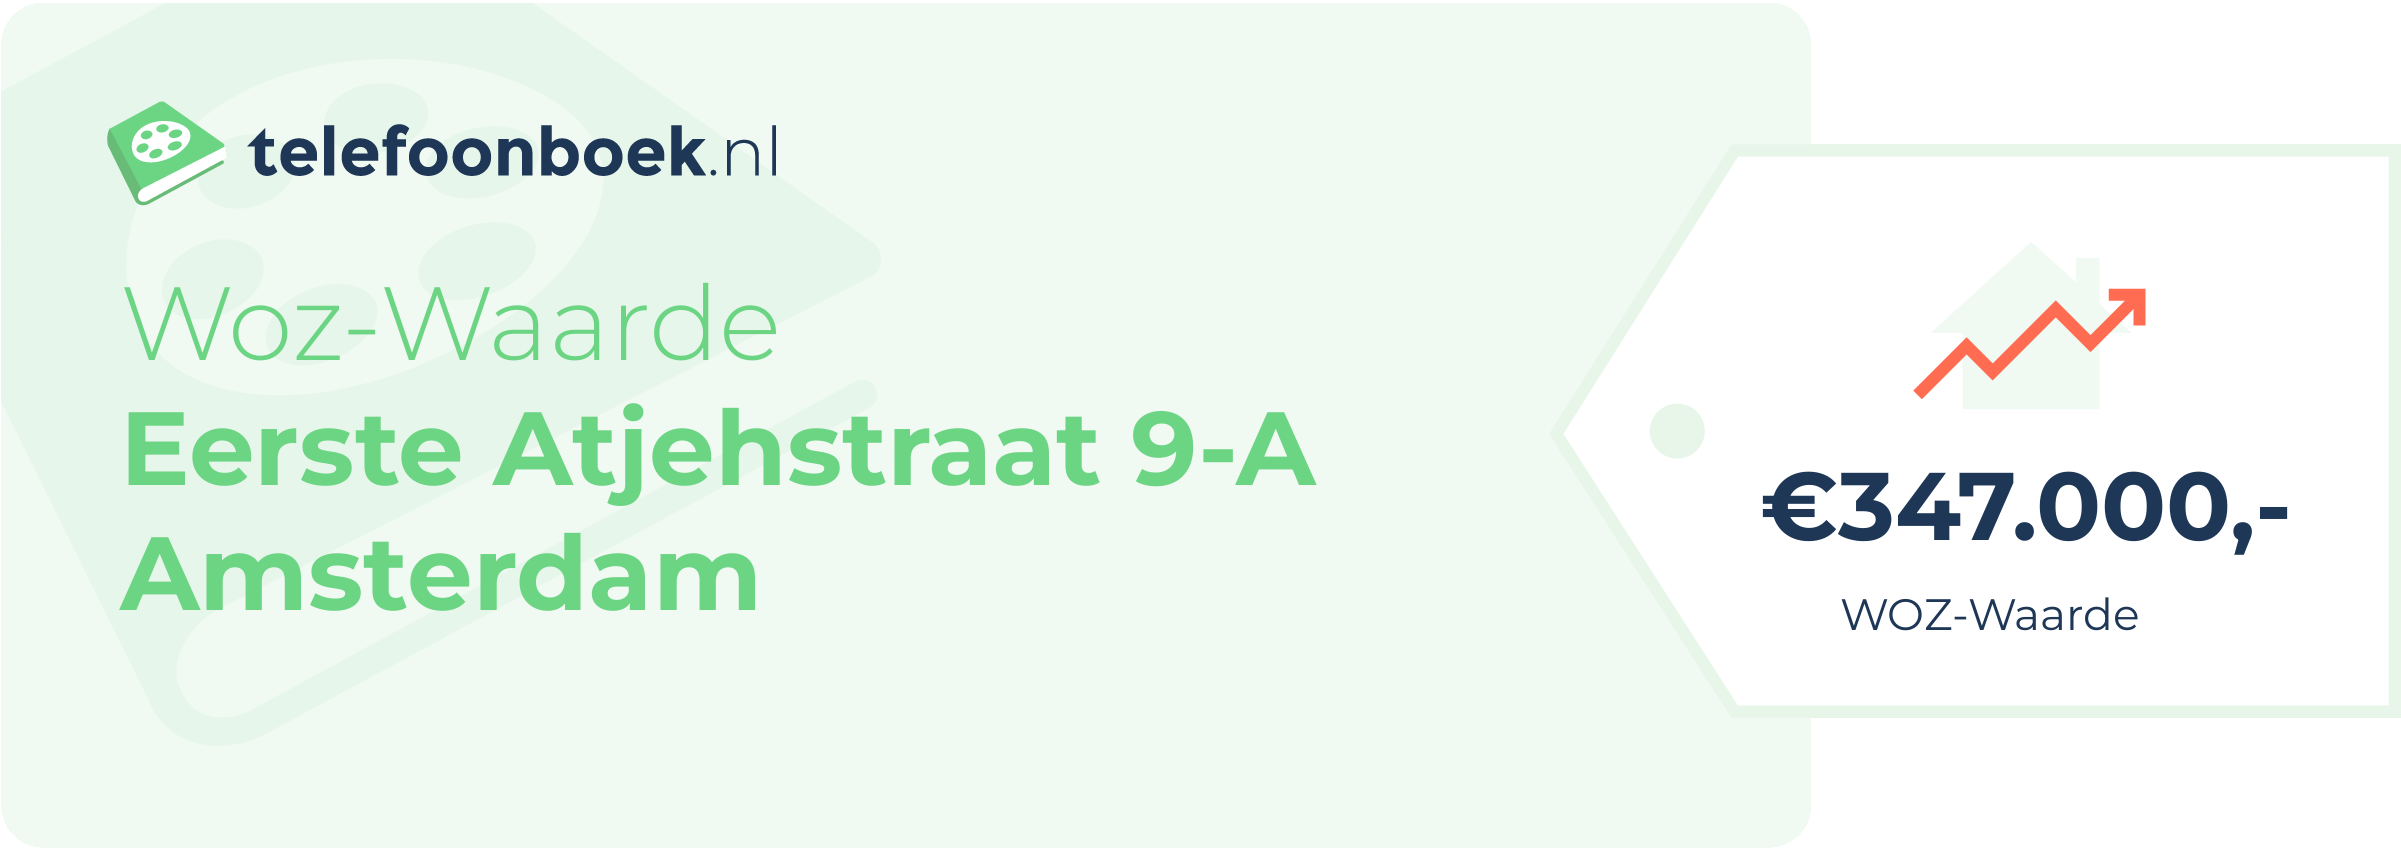 WOZ-waarde Eerste Atjehstraat 9-A Amsterdam